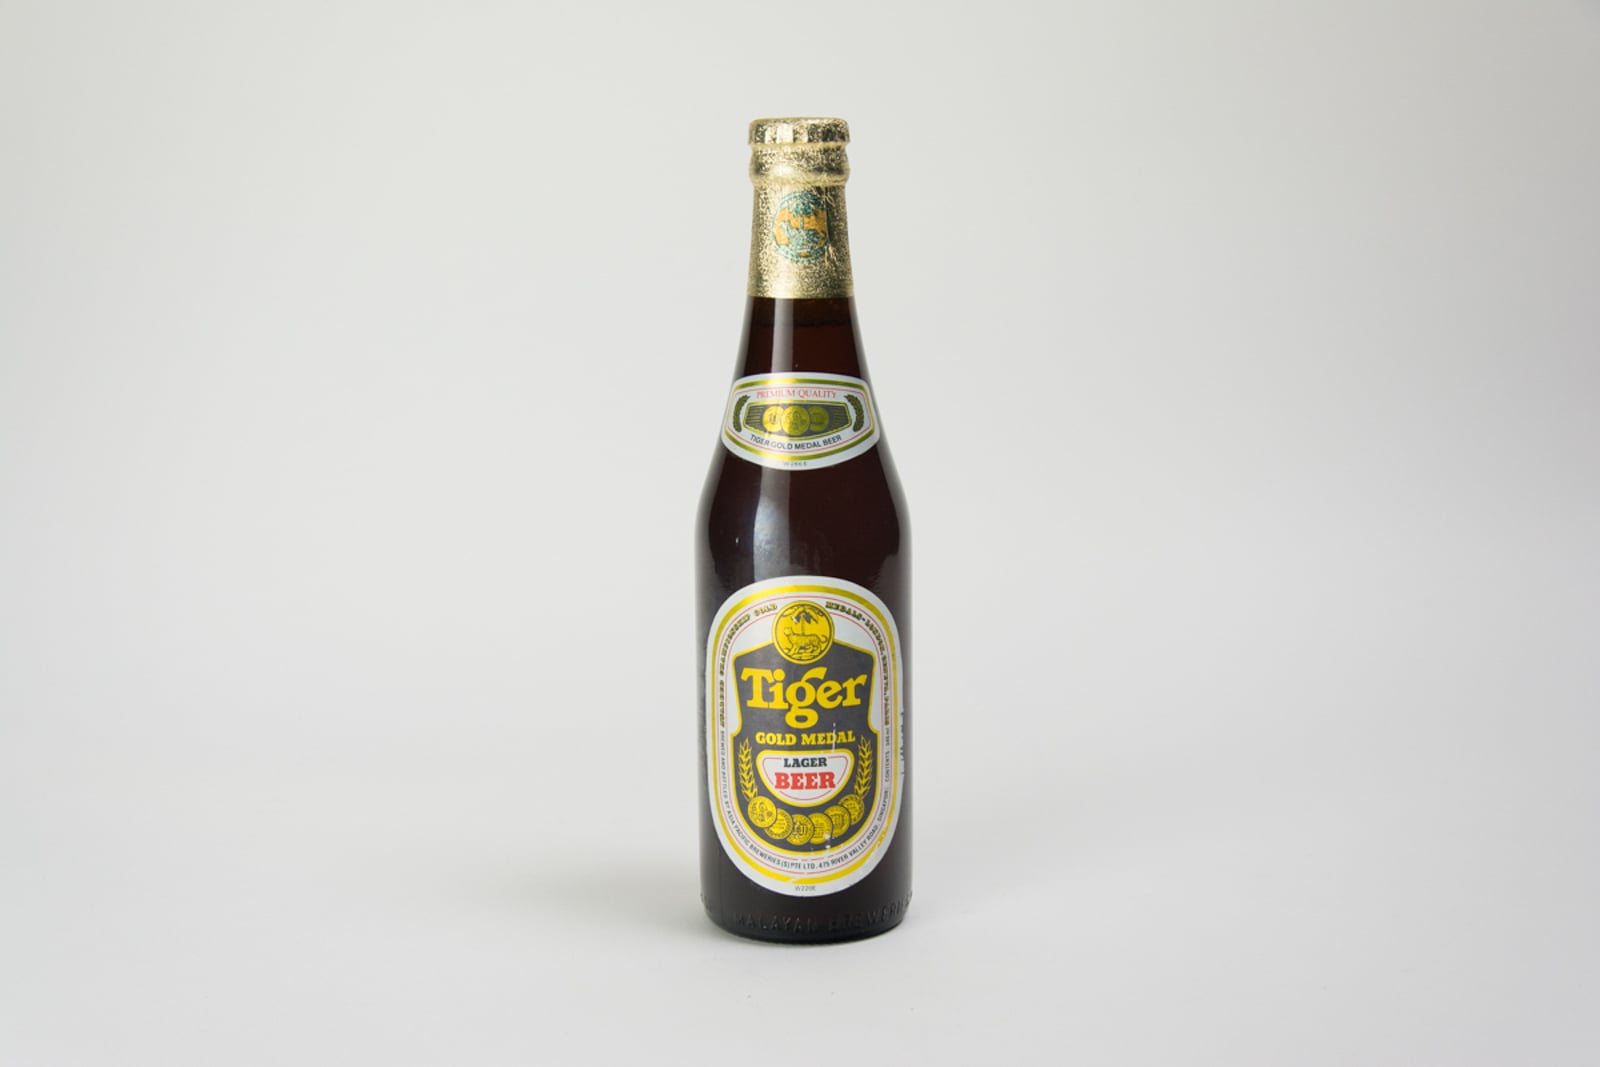 Tiger Gold Medal Lager Beer Bottle (W266E/W220E), 340ml